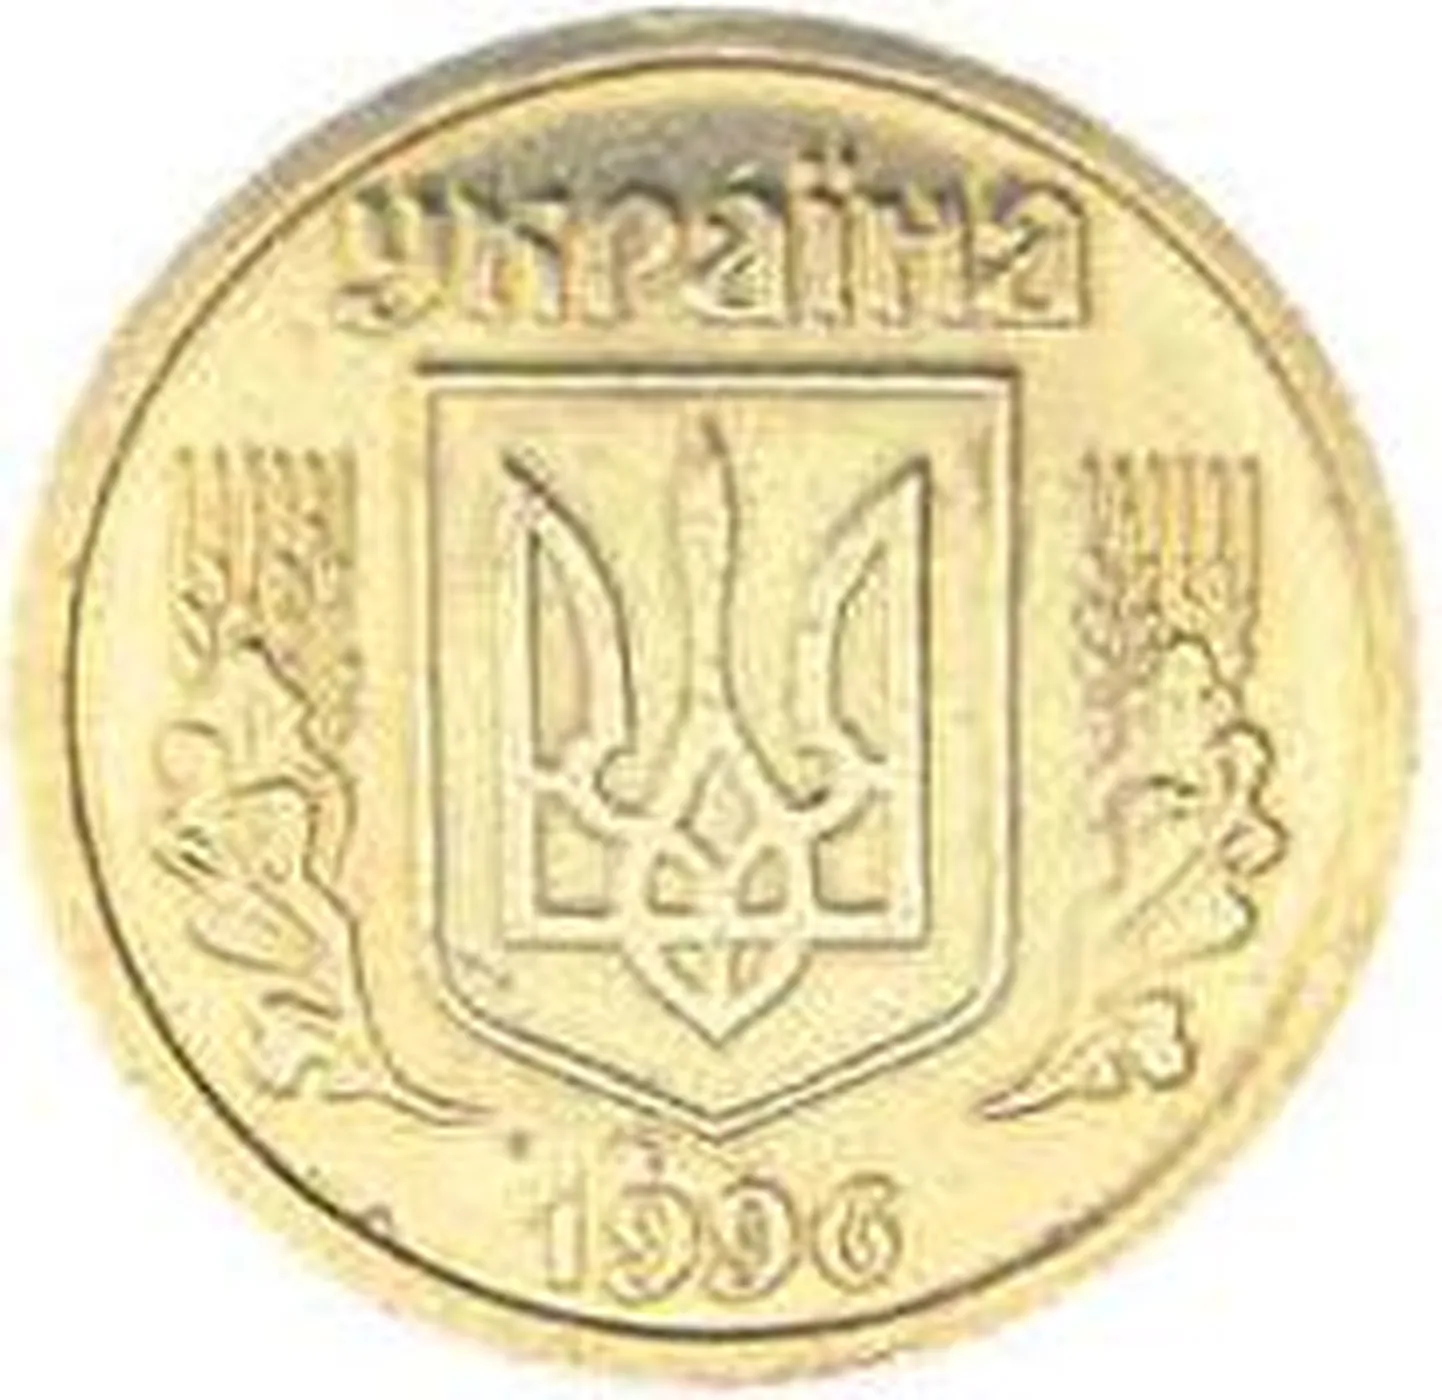 В твиттере появился аккаунт пользователя под ником «Гривня», который пишет от имени украинской валюты.